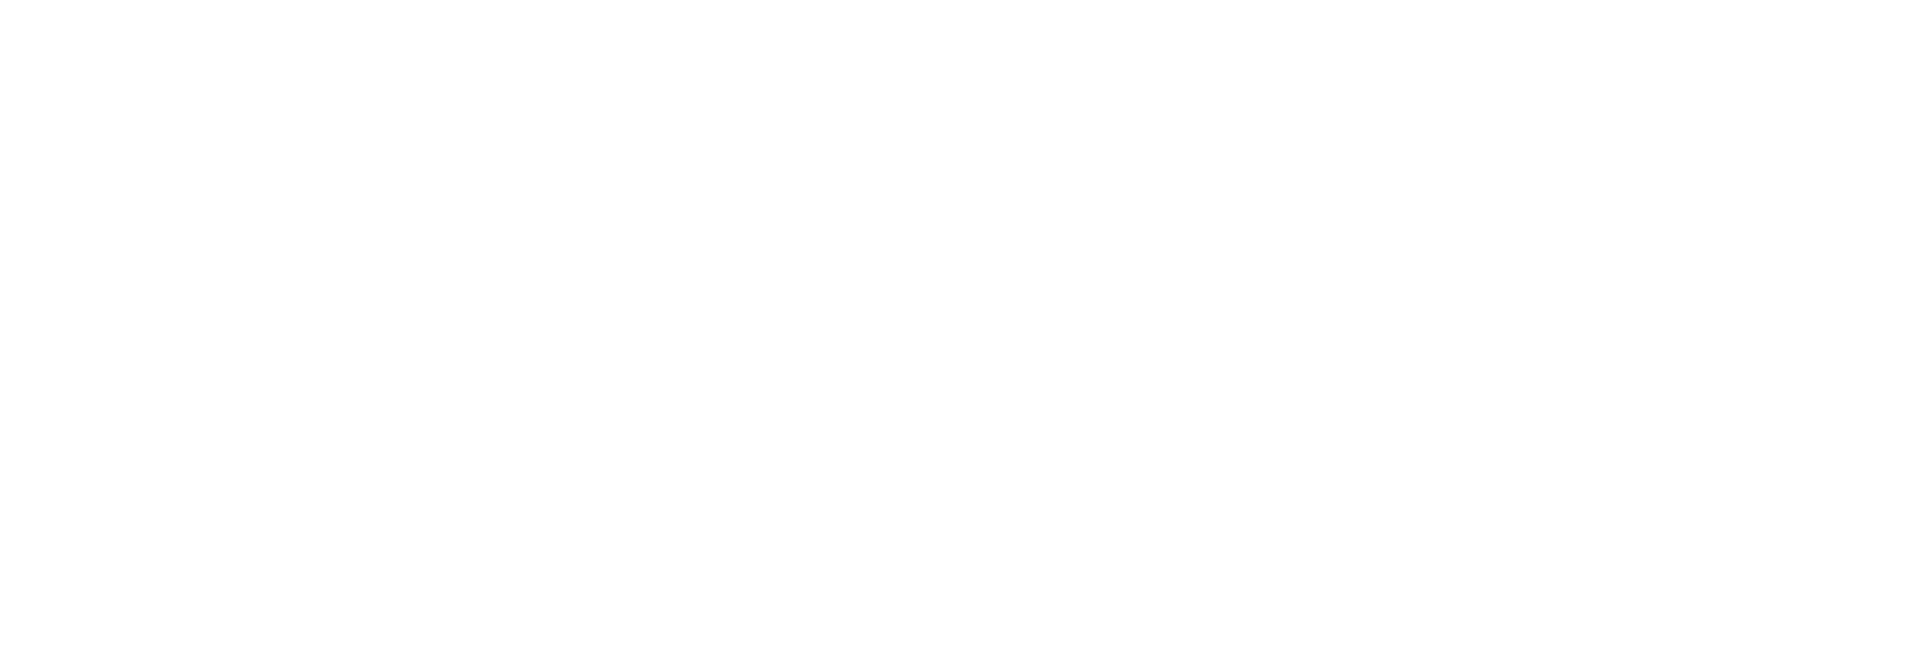 Prelum Medische media en nascholing